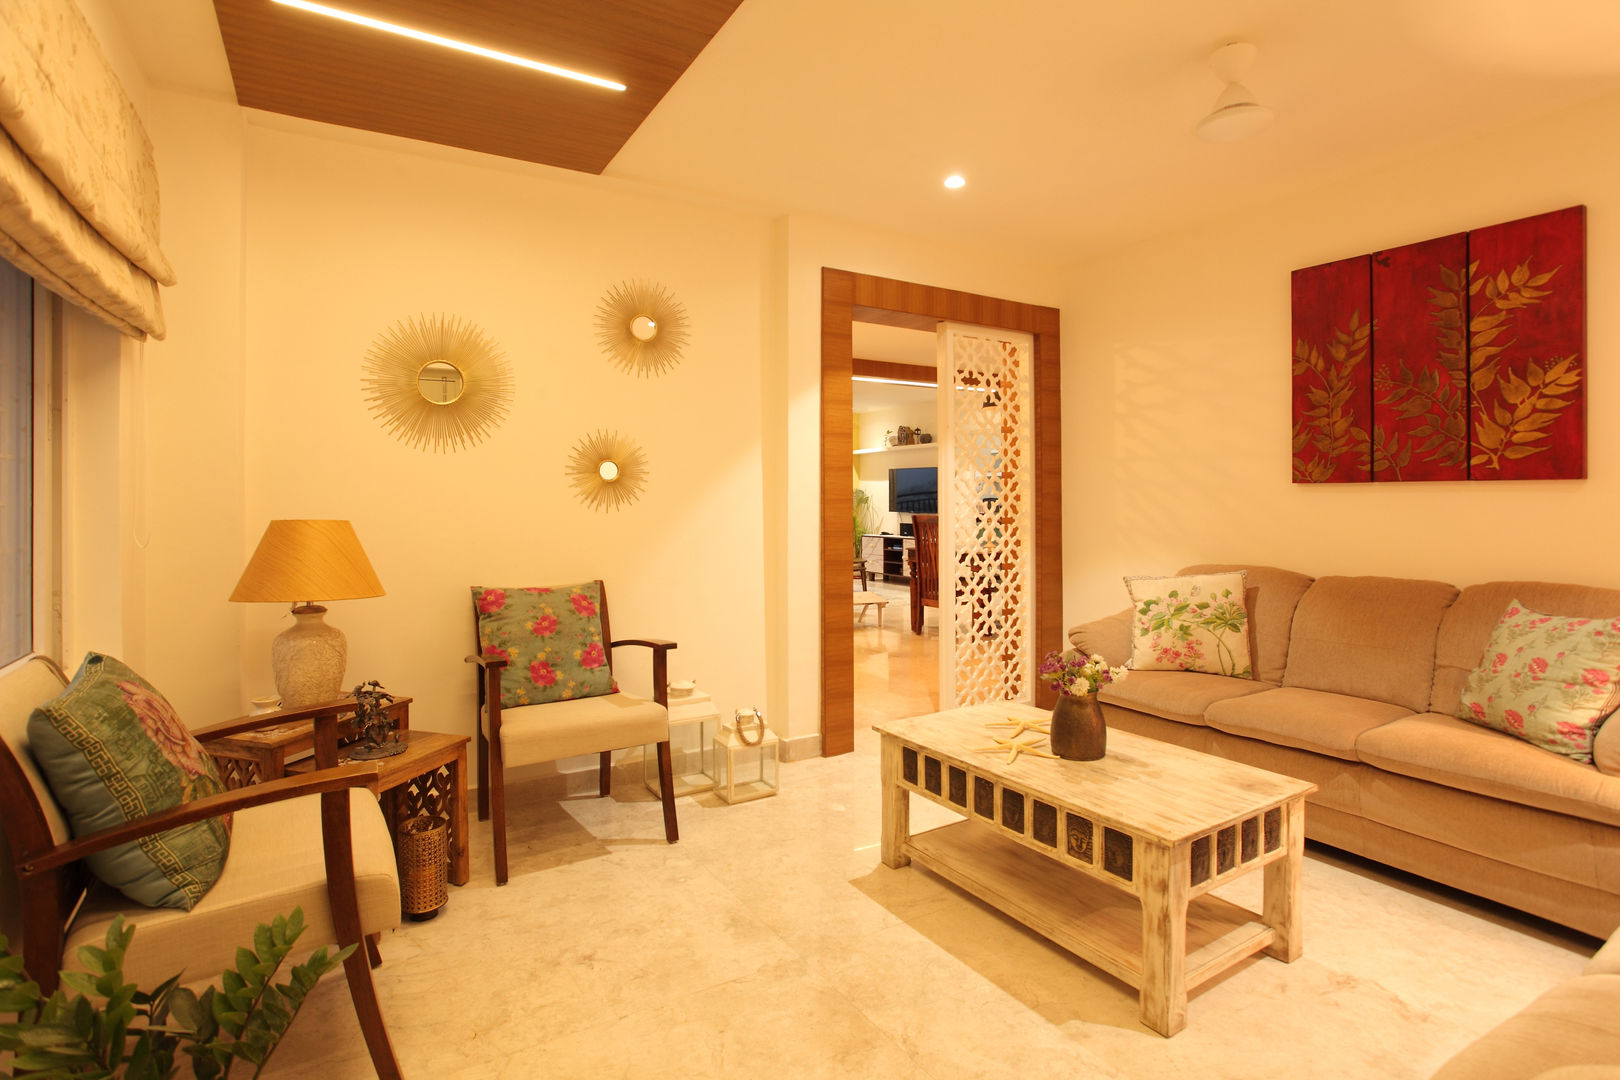 Apartment, Hyderabad, Saloni Narayankar Interiors Saloni Narayankar Interiors Livings de estilo rústico Accesorios y decoración